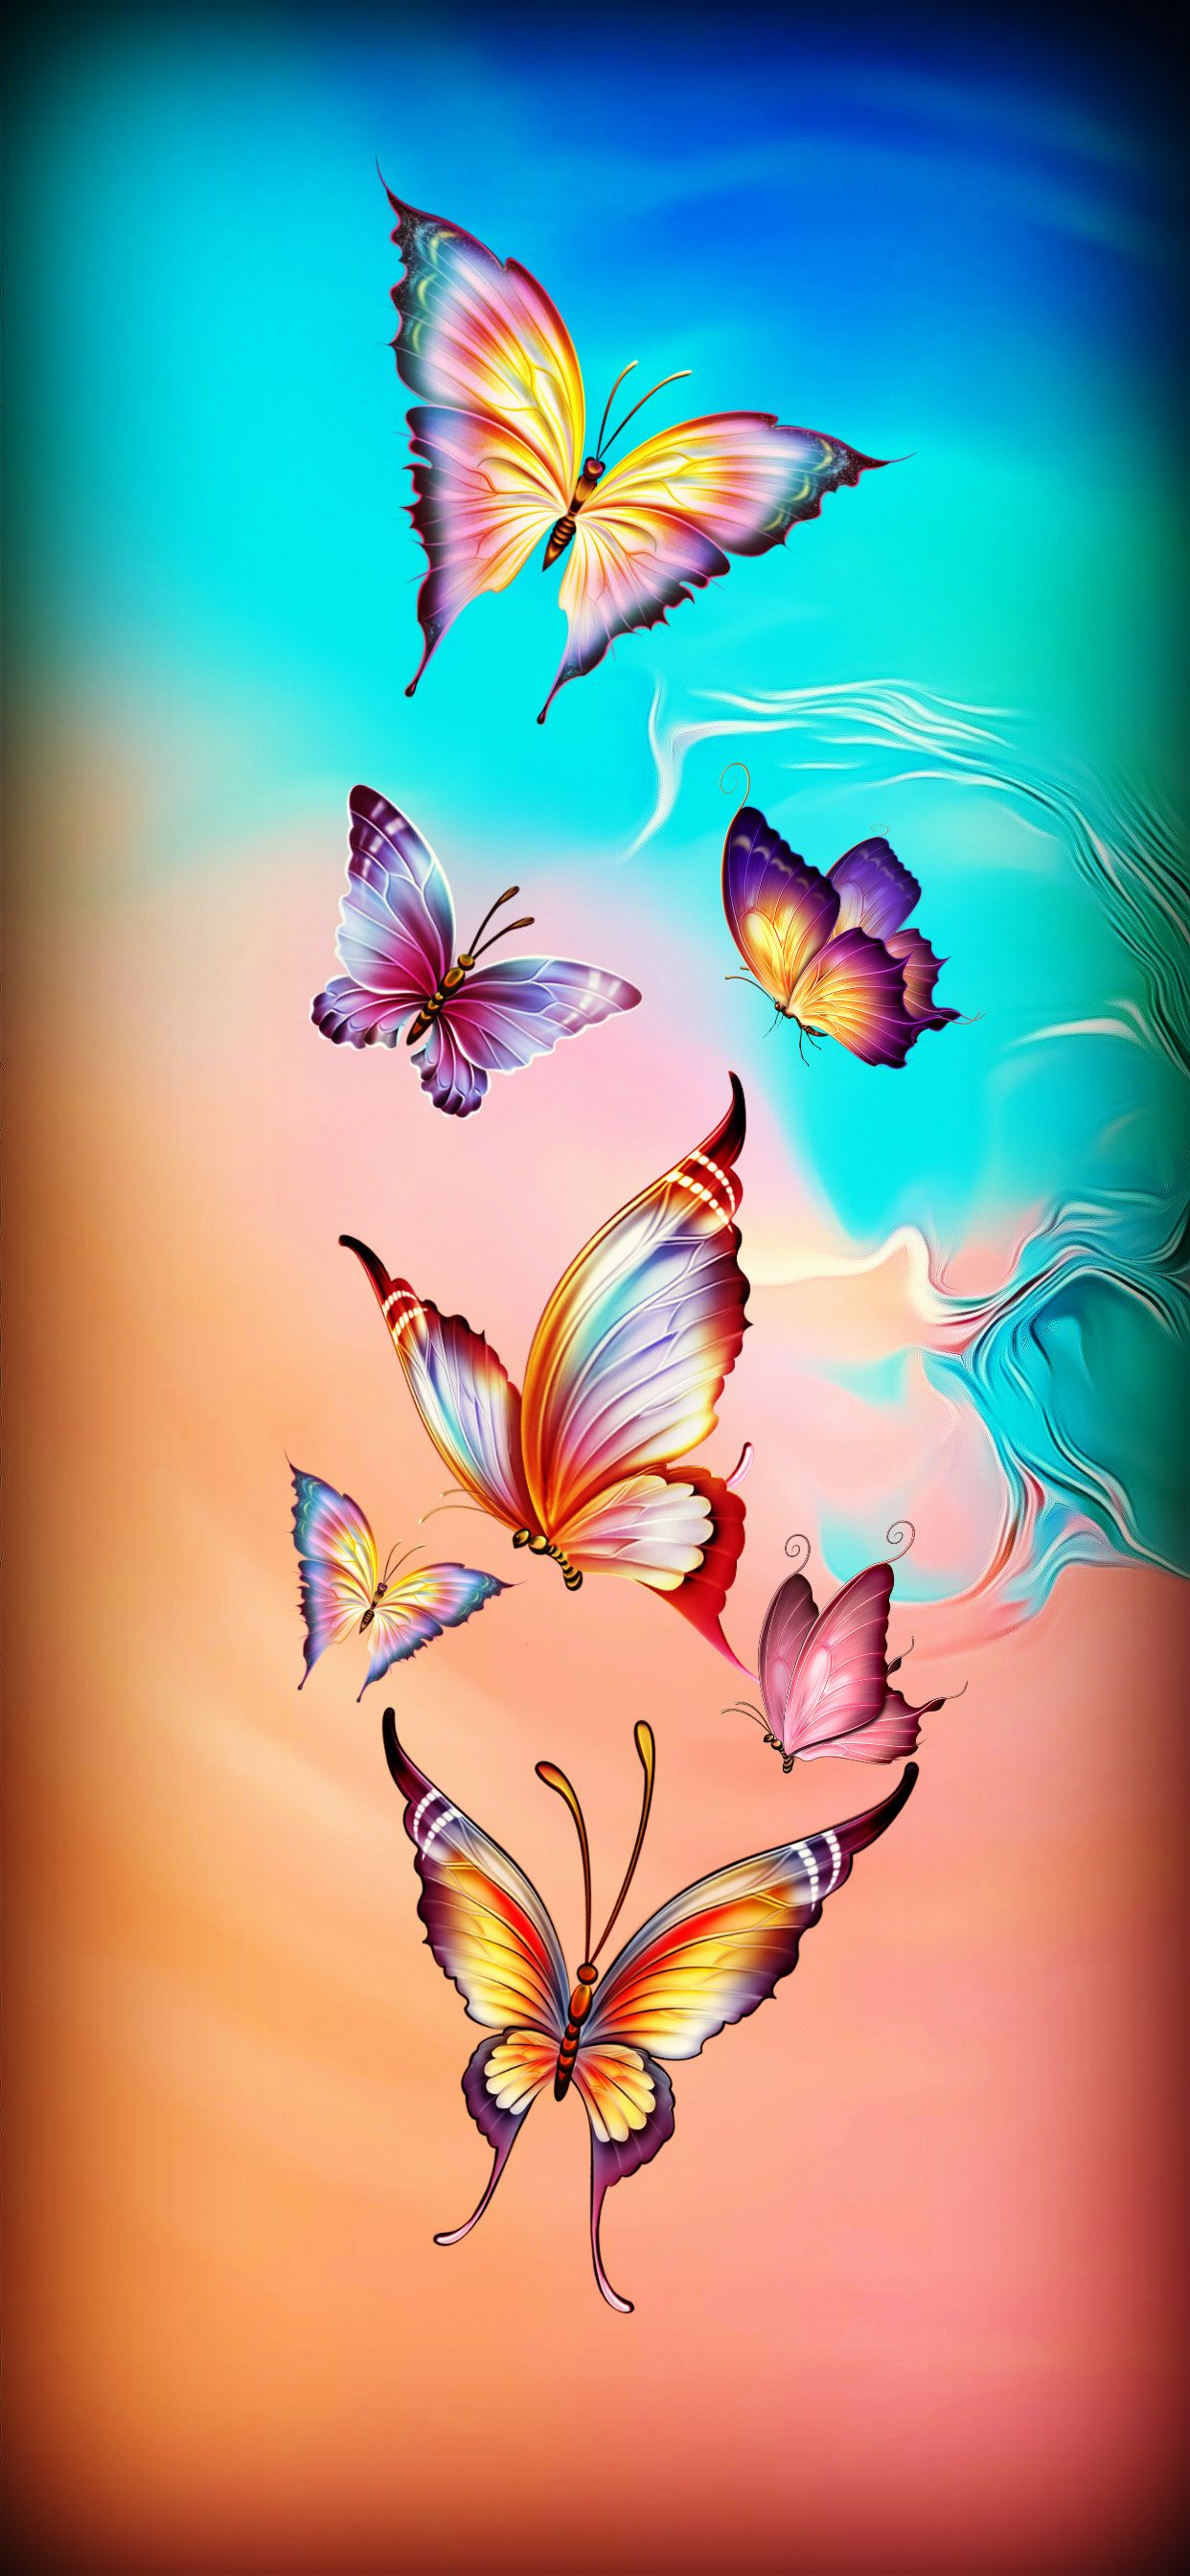 Butterflies ideas. butterfly art, butterfly wallpaper, butterfly